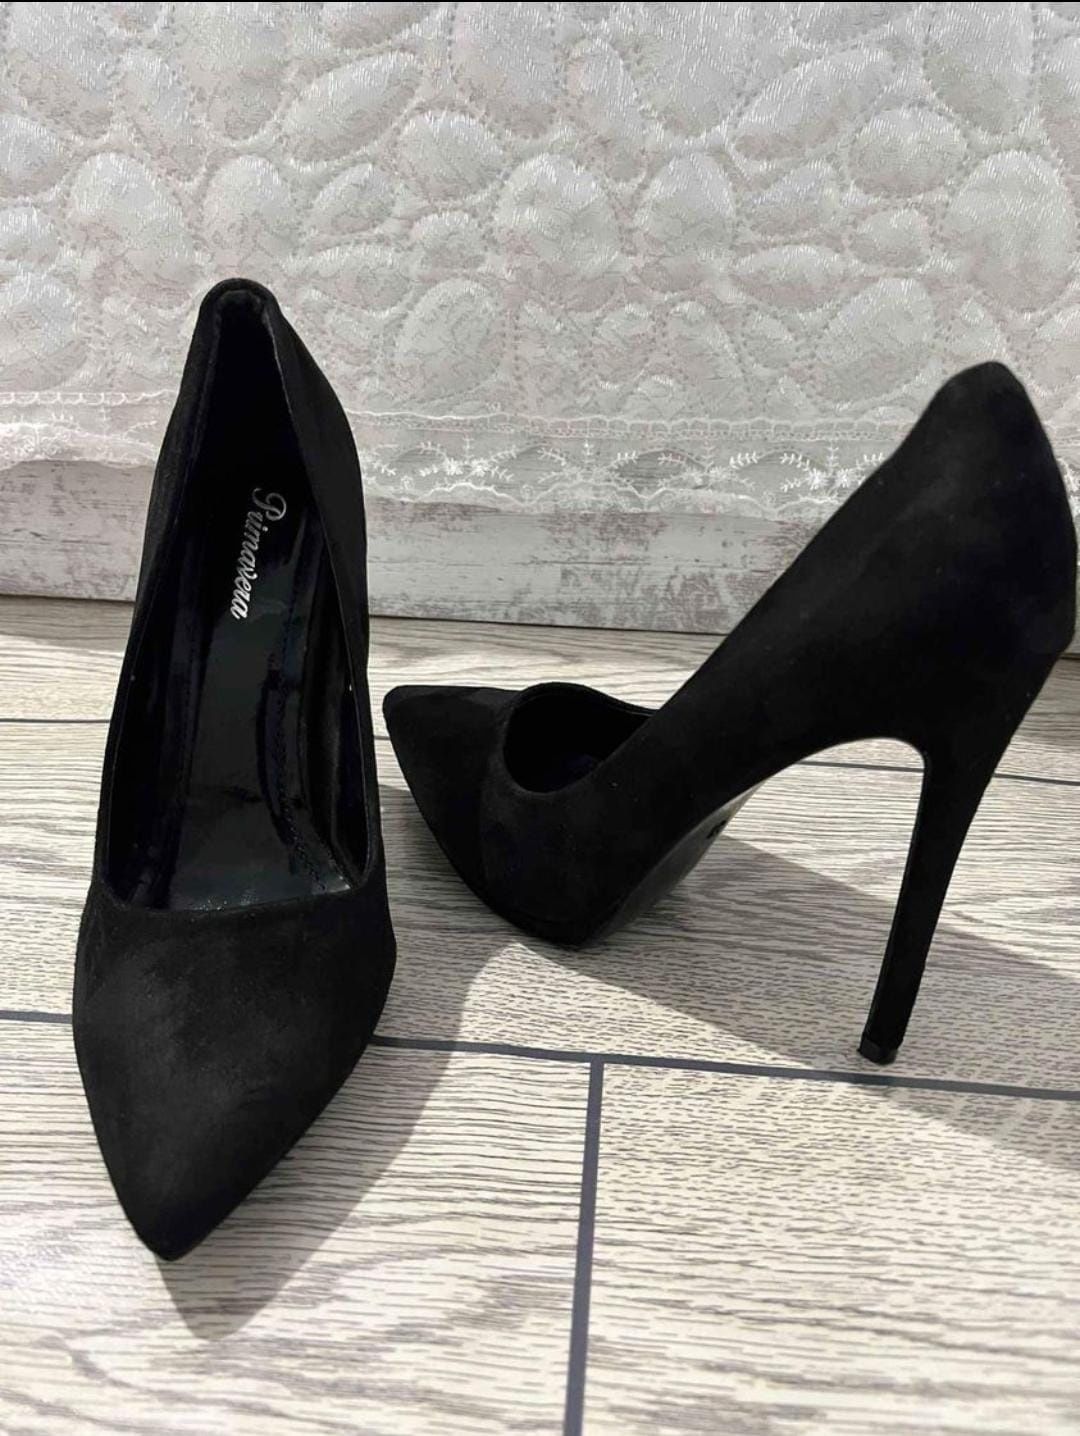 Дамски обувки стилето.
38 номер, черен цвят.
Като нови без забележки!